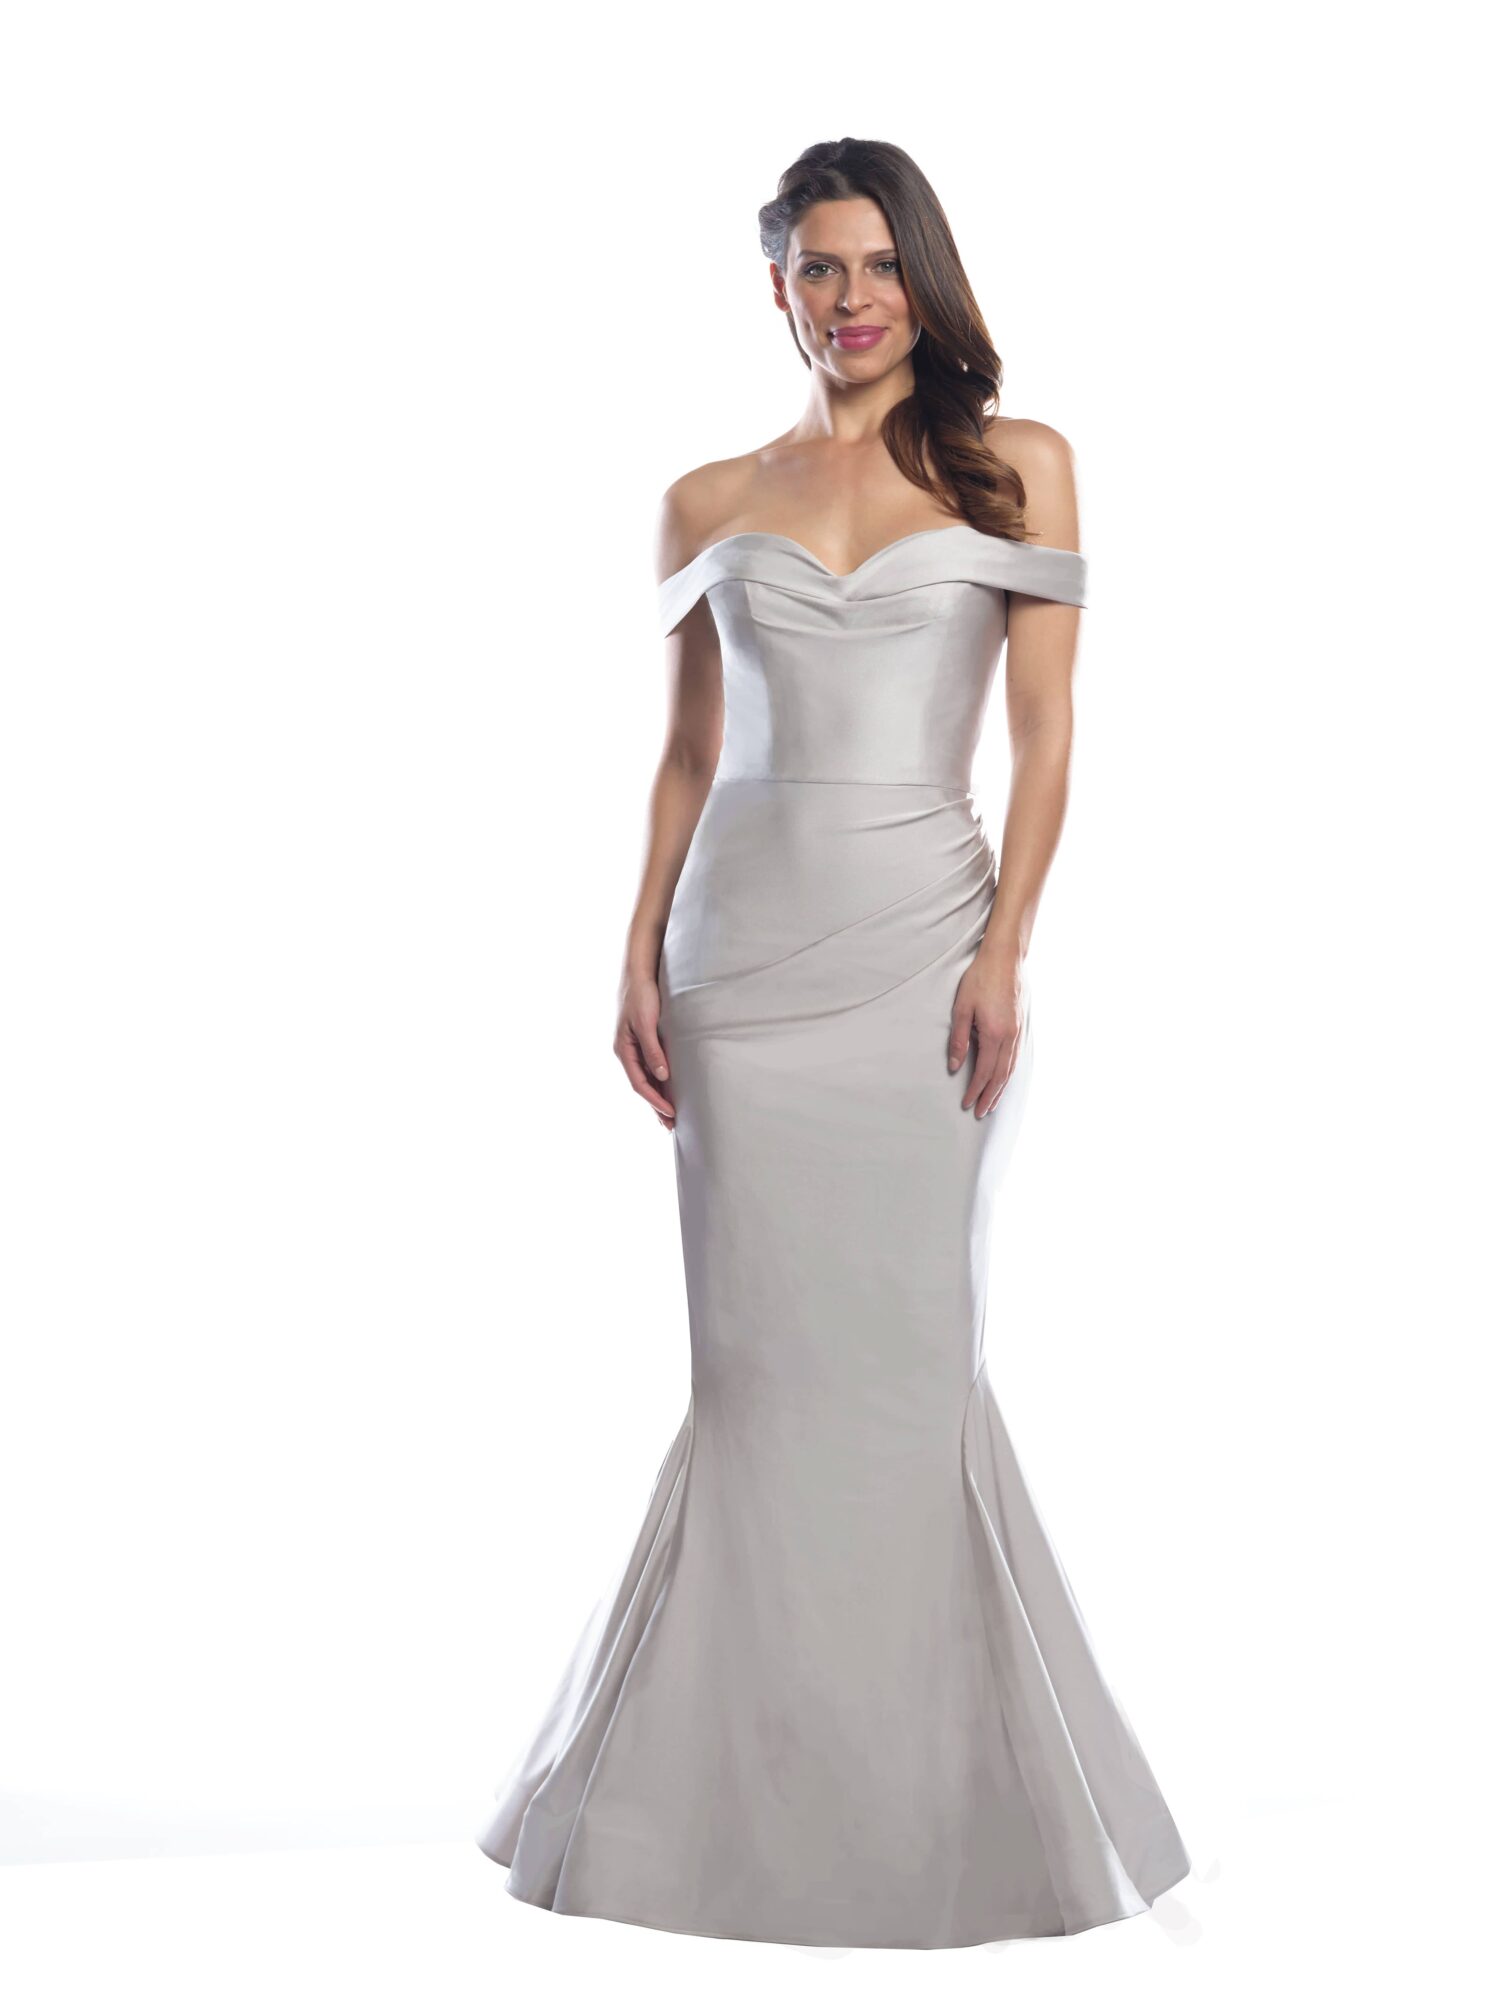 Bari Jay Bridesmaid Dress Collection | Bridal Reflections